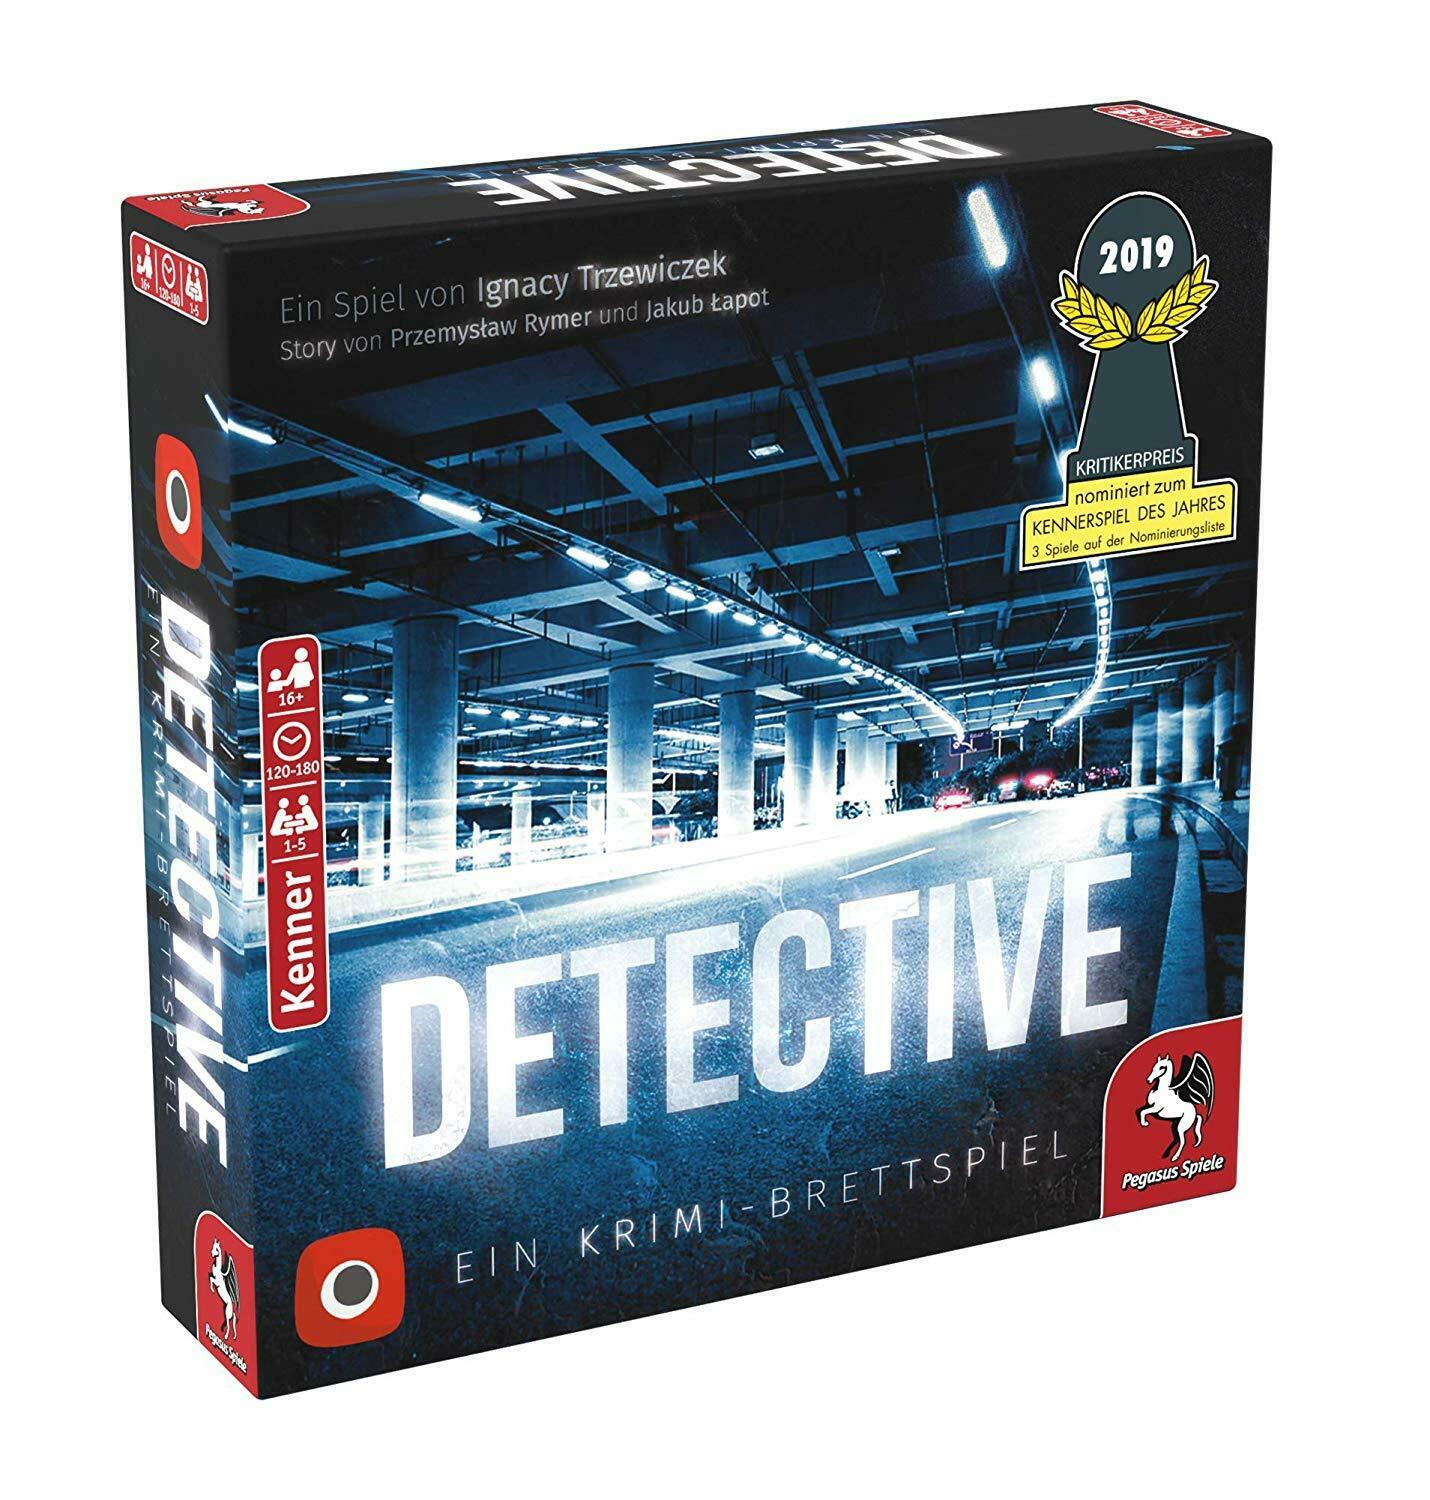 Detective Deutsch Pegasus Spiele Nominiert Kennerspiel des Jahres 2019 Neu + OVP